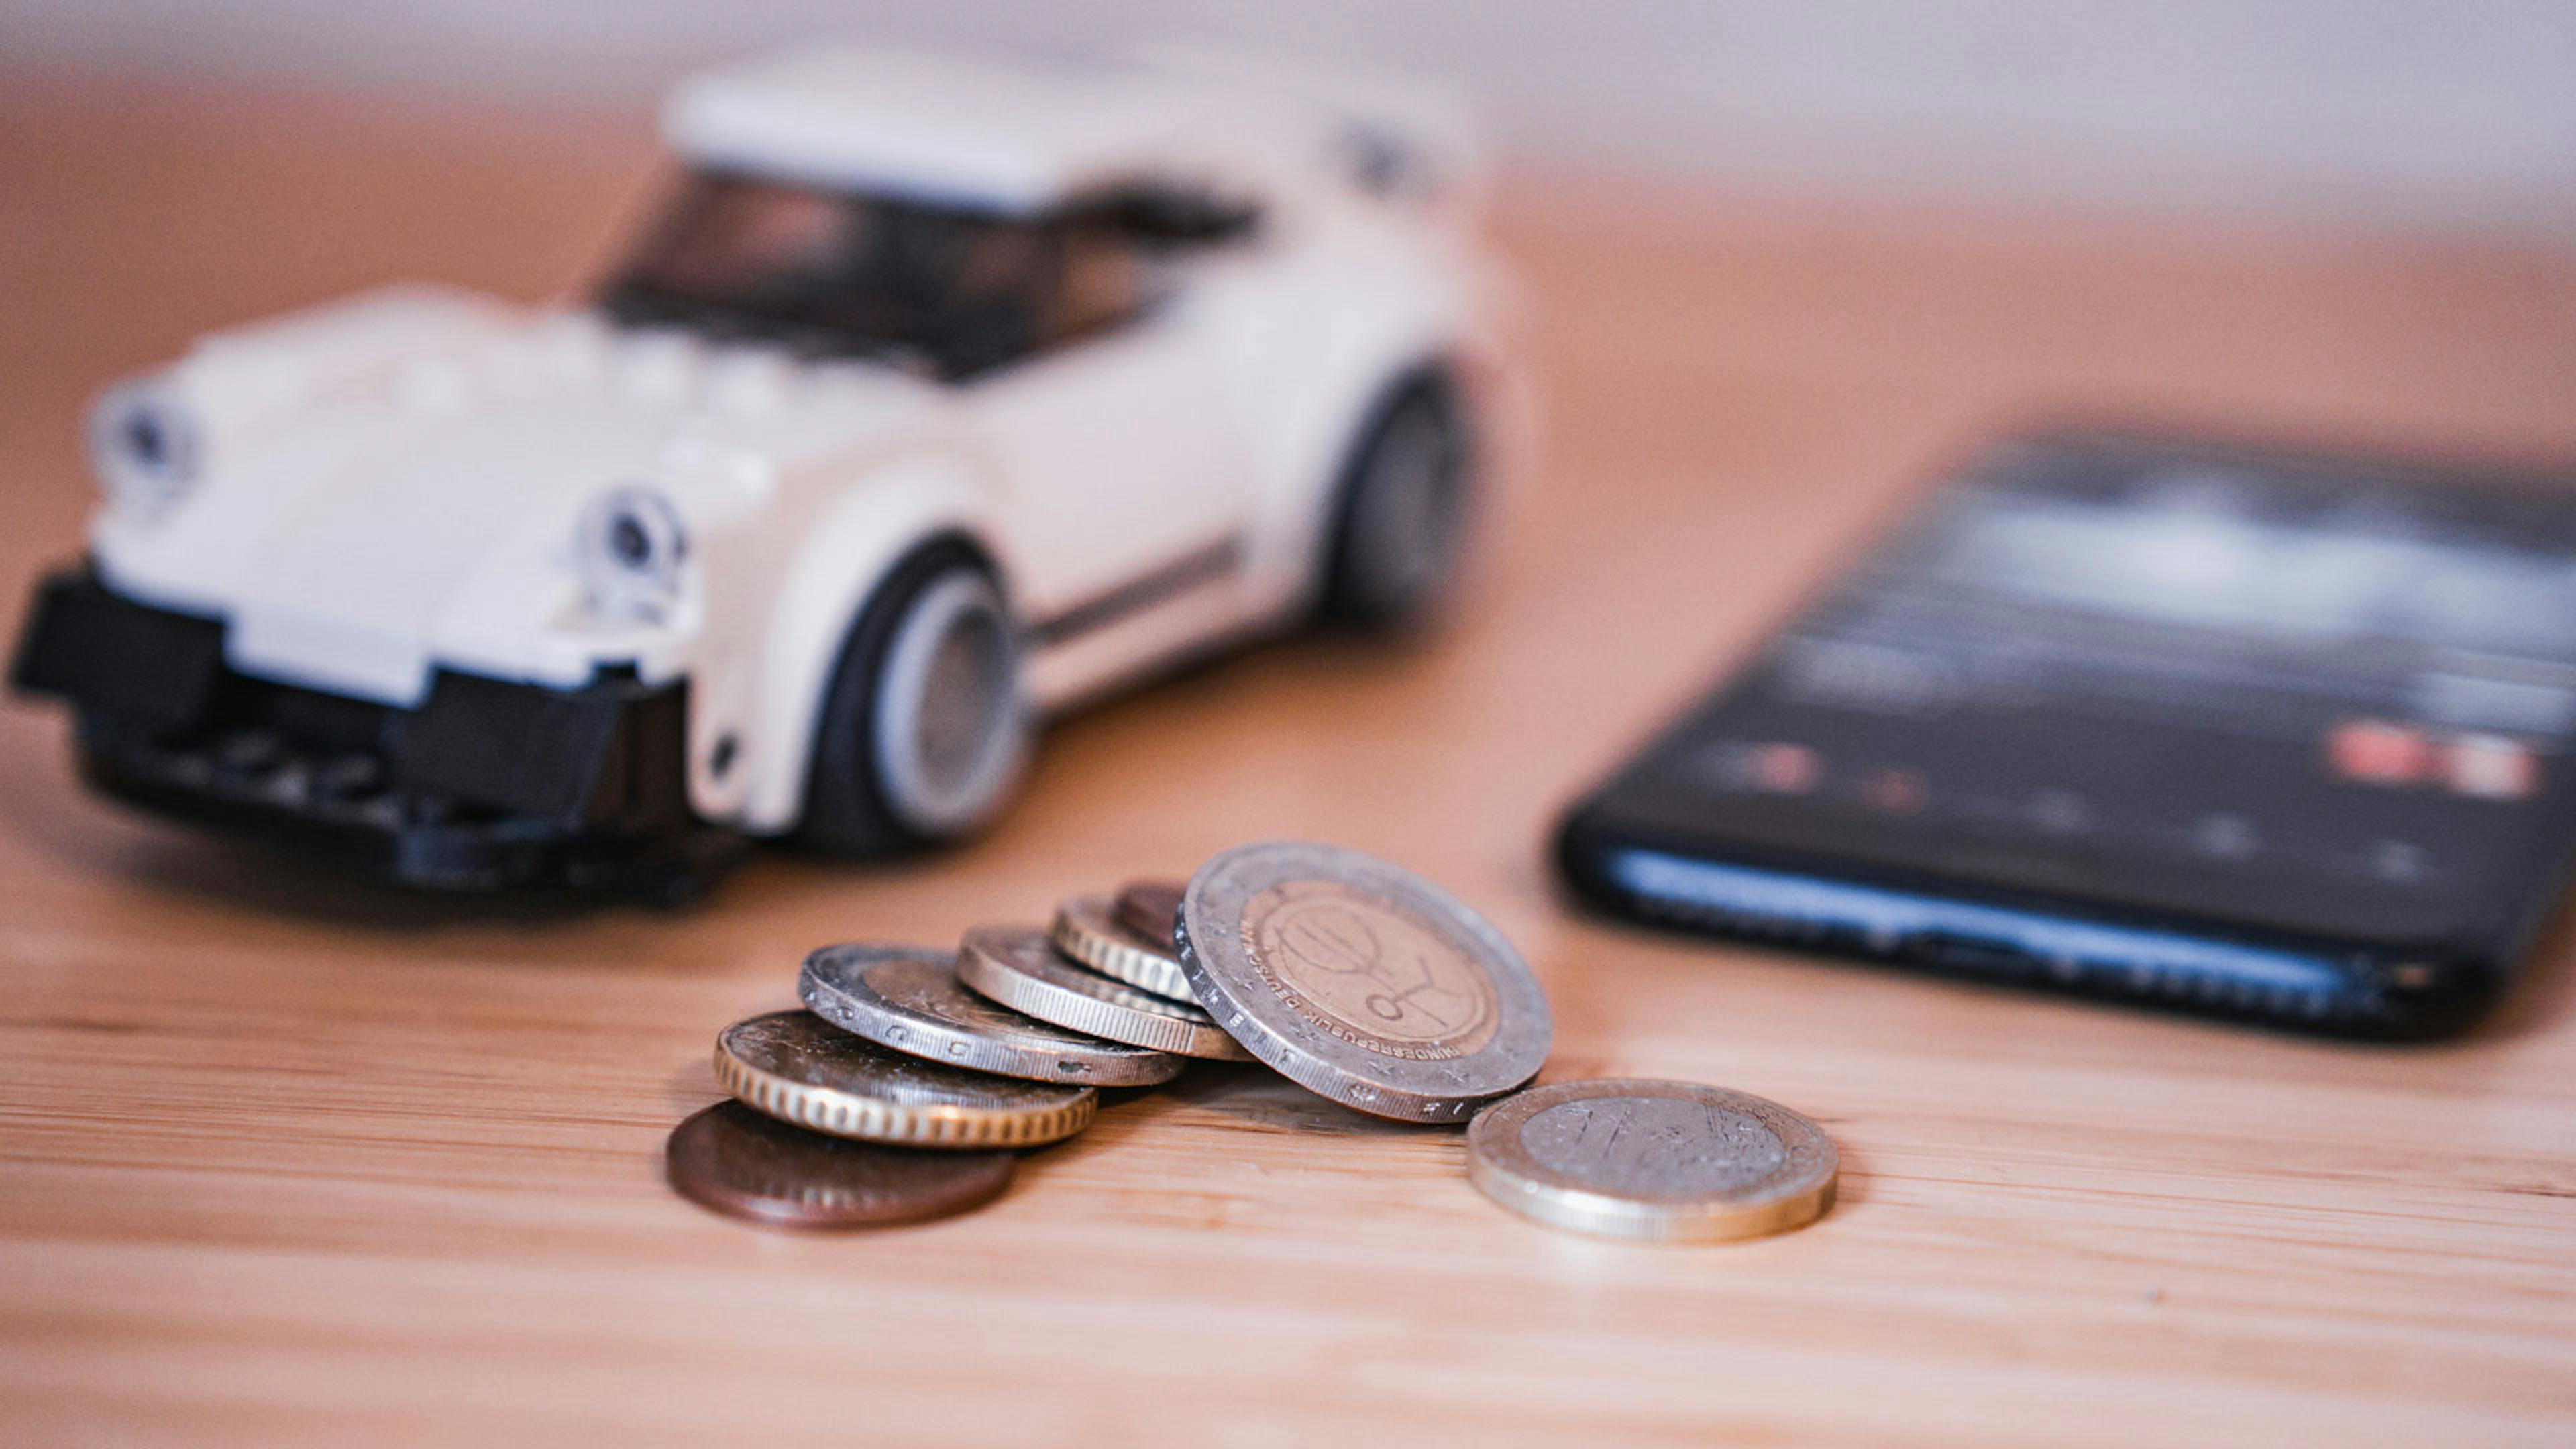 Stillleben mit einem weißen Spielzeugauto, verschiedenen Euromünzen und einem Smartphone.